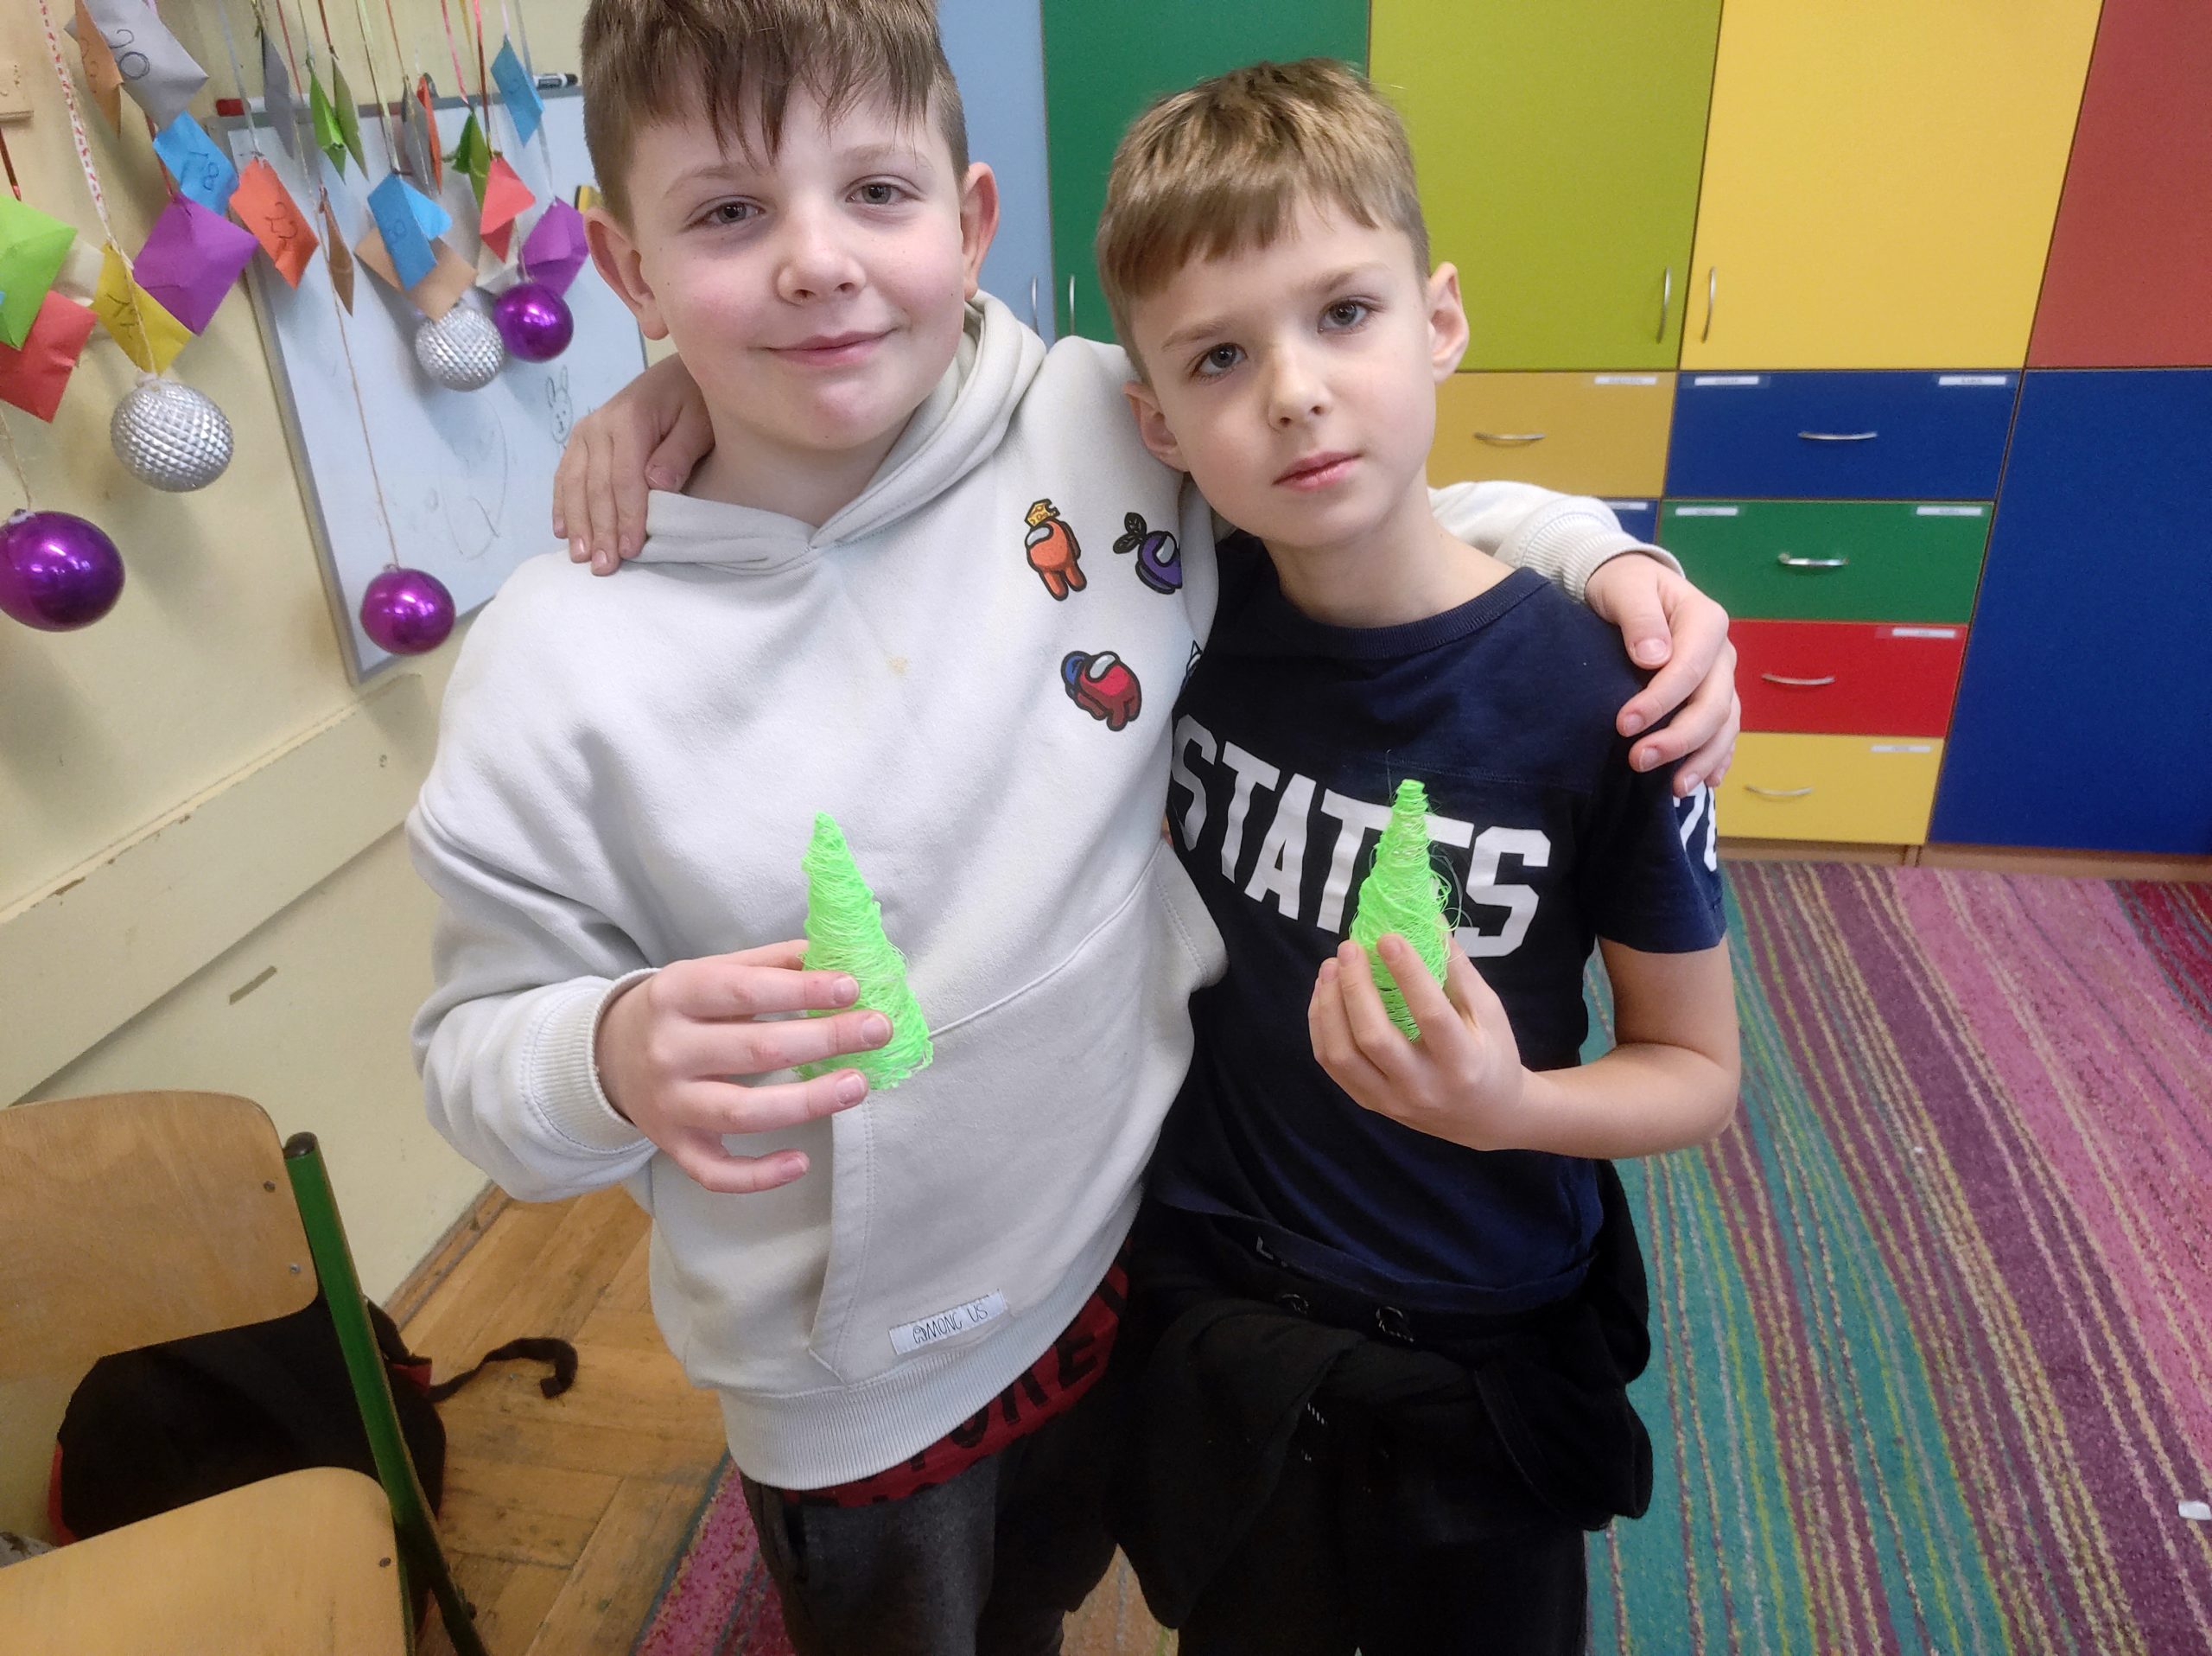 Dwóch chłopców stoi obok obejmując się. Każdy w ręku trzyma zielony stożek imitujący choinkę.